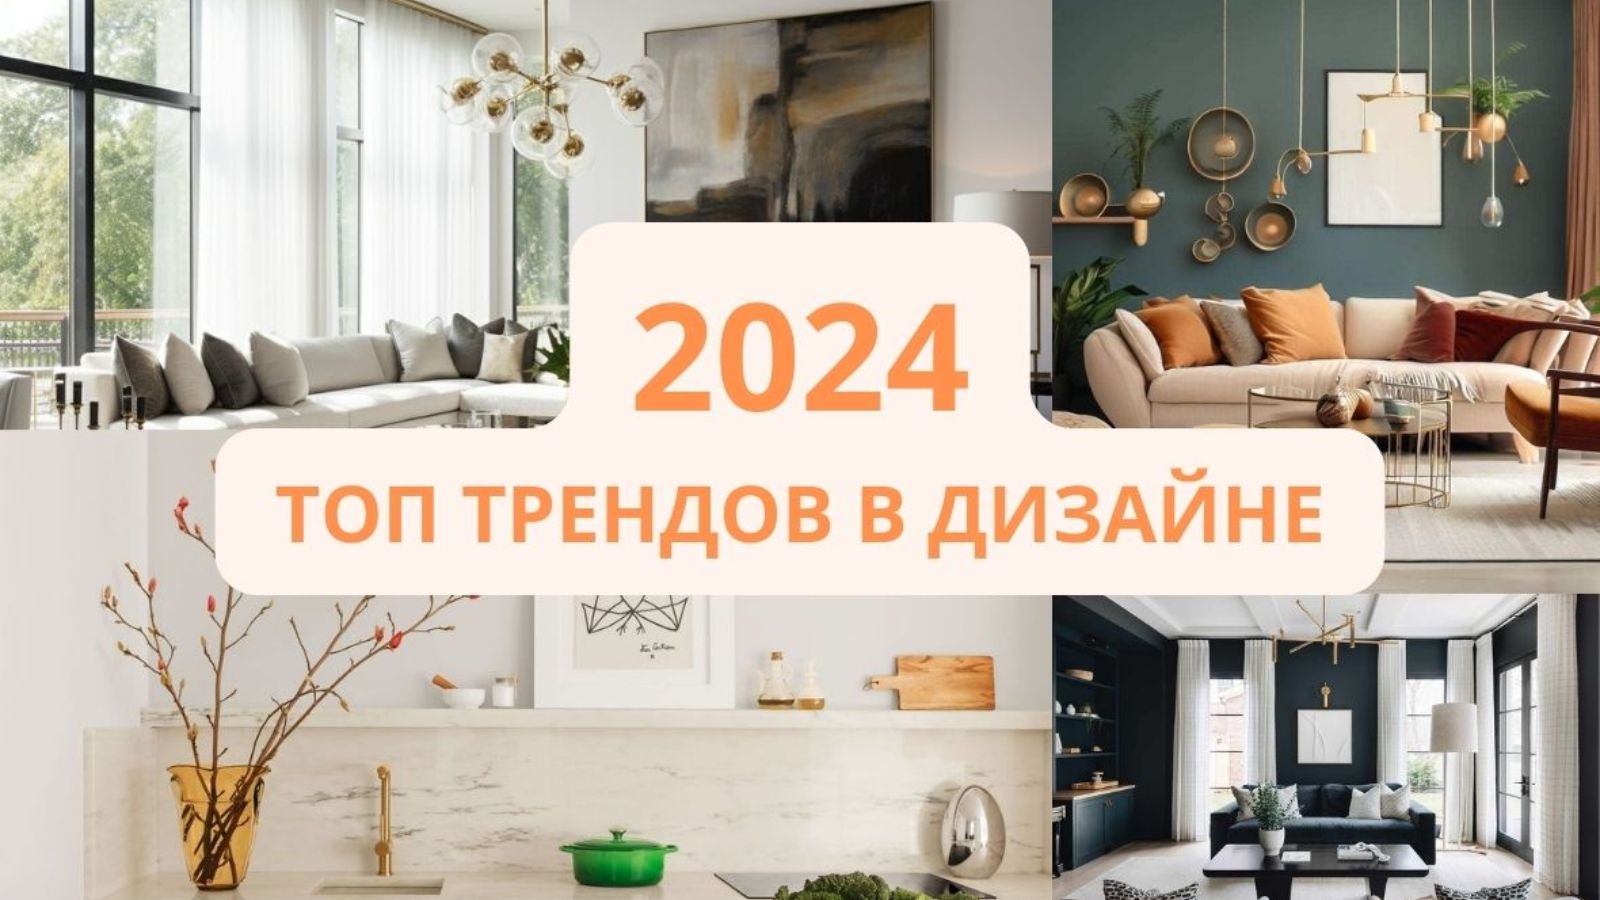 Тренды в дизайне интерьера в 2024 году